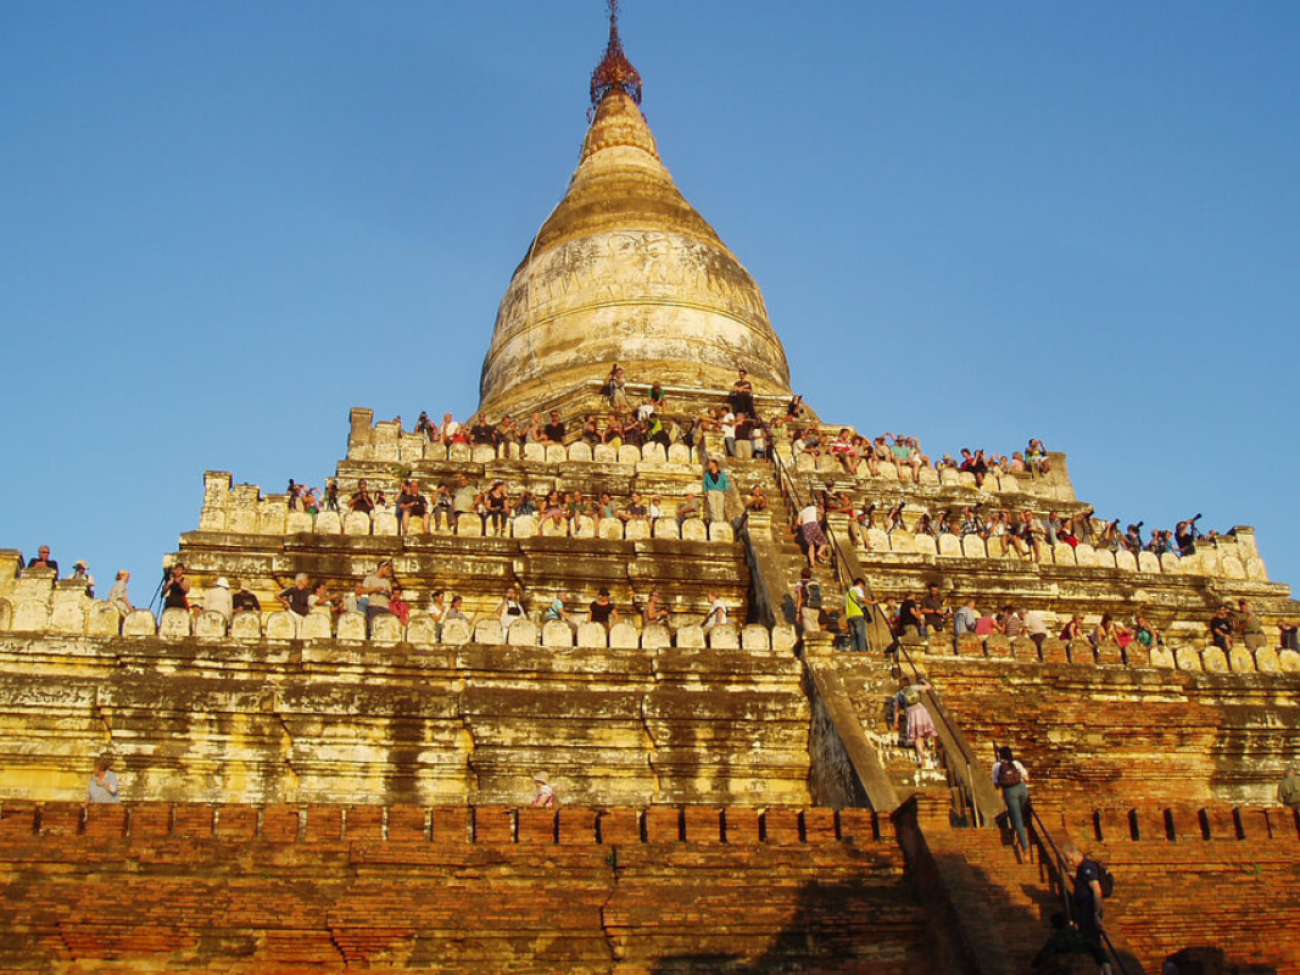 Photo: Bagan Day Tours